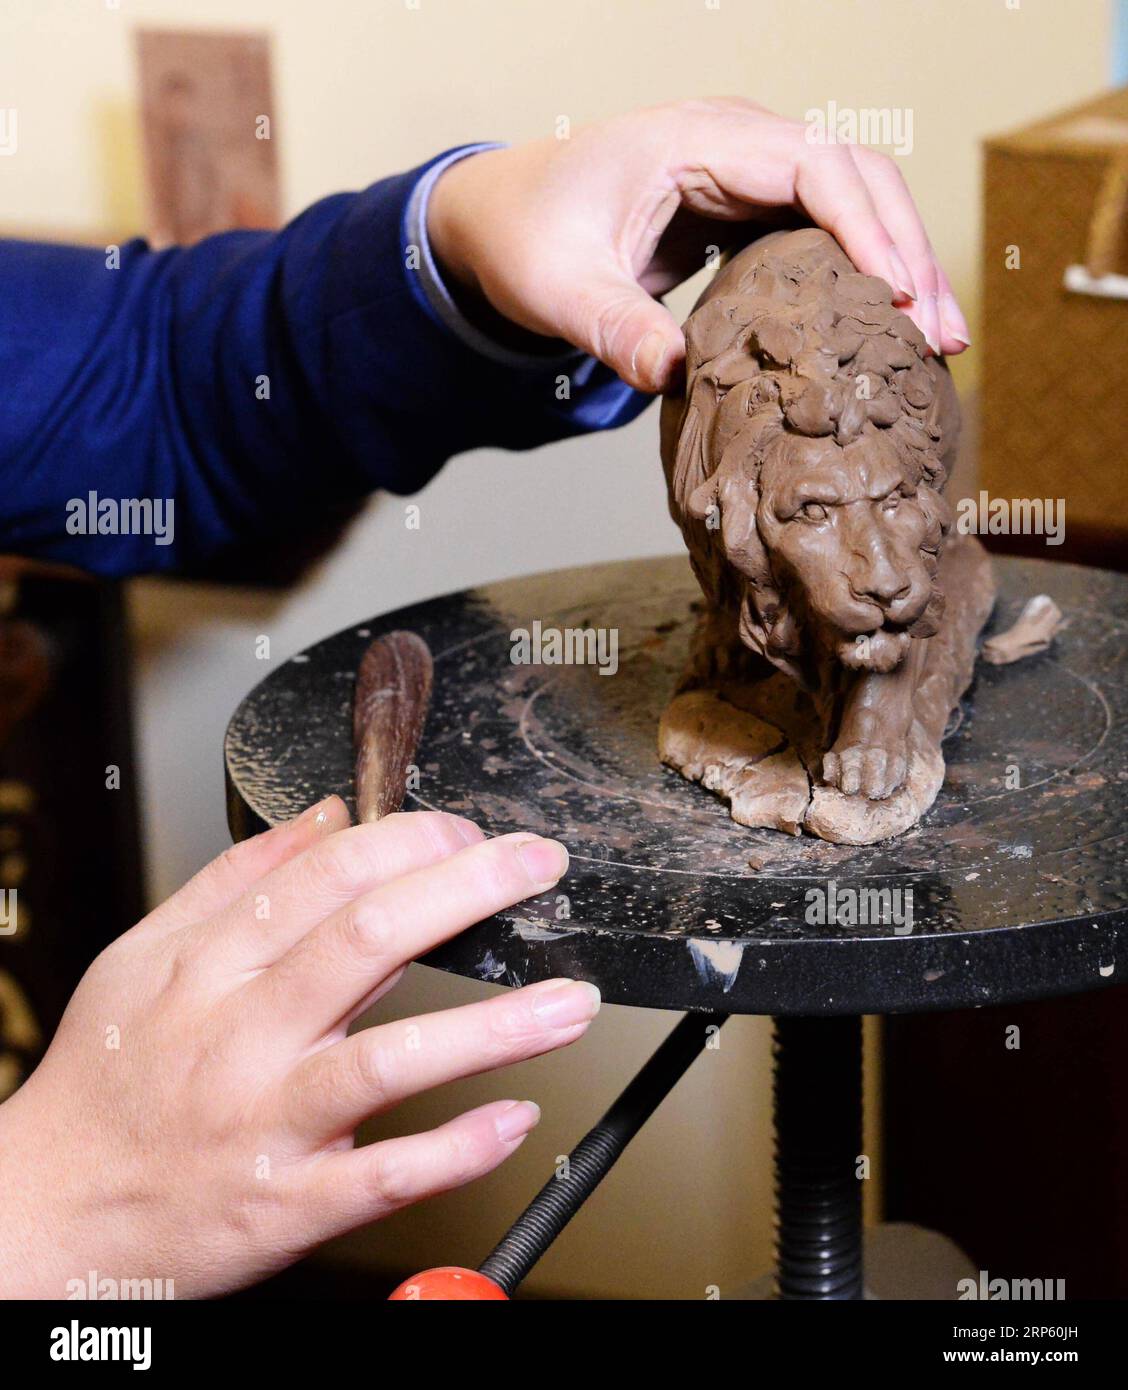 (181229) -- PÉKIN, 29 décembre 2018 (Xinhua) -- Zhang Yu, le fabricant de sixième génération de figurines en argile Zhang, pétrisse une figurine dans son atelier de la galerie d'art Clay Figure Zhang à Tianjin, dans le nord de la Chine, le 28 décembre 2018. Figure d'argile Zhang est un nom familier de l'art populaire traditionnel en Chine, et une telle œuvre a une histoire de près de 200 ans. Zhang Yu, le fabricant de figurines en argile de sixième génération de sa famille, a pris en charge l’entreprise familiale en 1996, alors qu’il n’avait que 18 ans. Au fil du temps, le métier et la marque ont évolué. Au lieu de faire des figurines et de les vendre comme un vendeur de rue, il h Banque D'Images